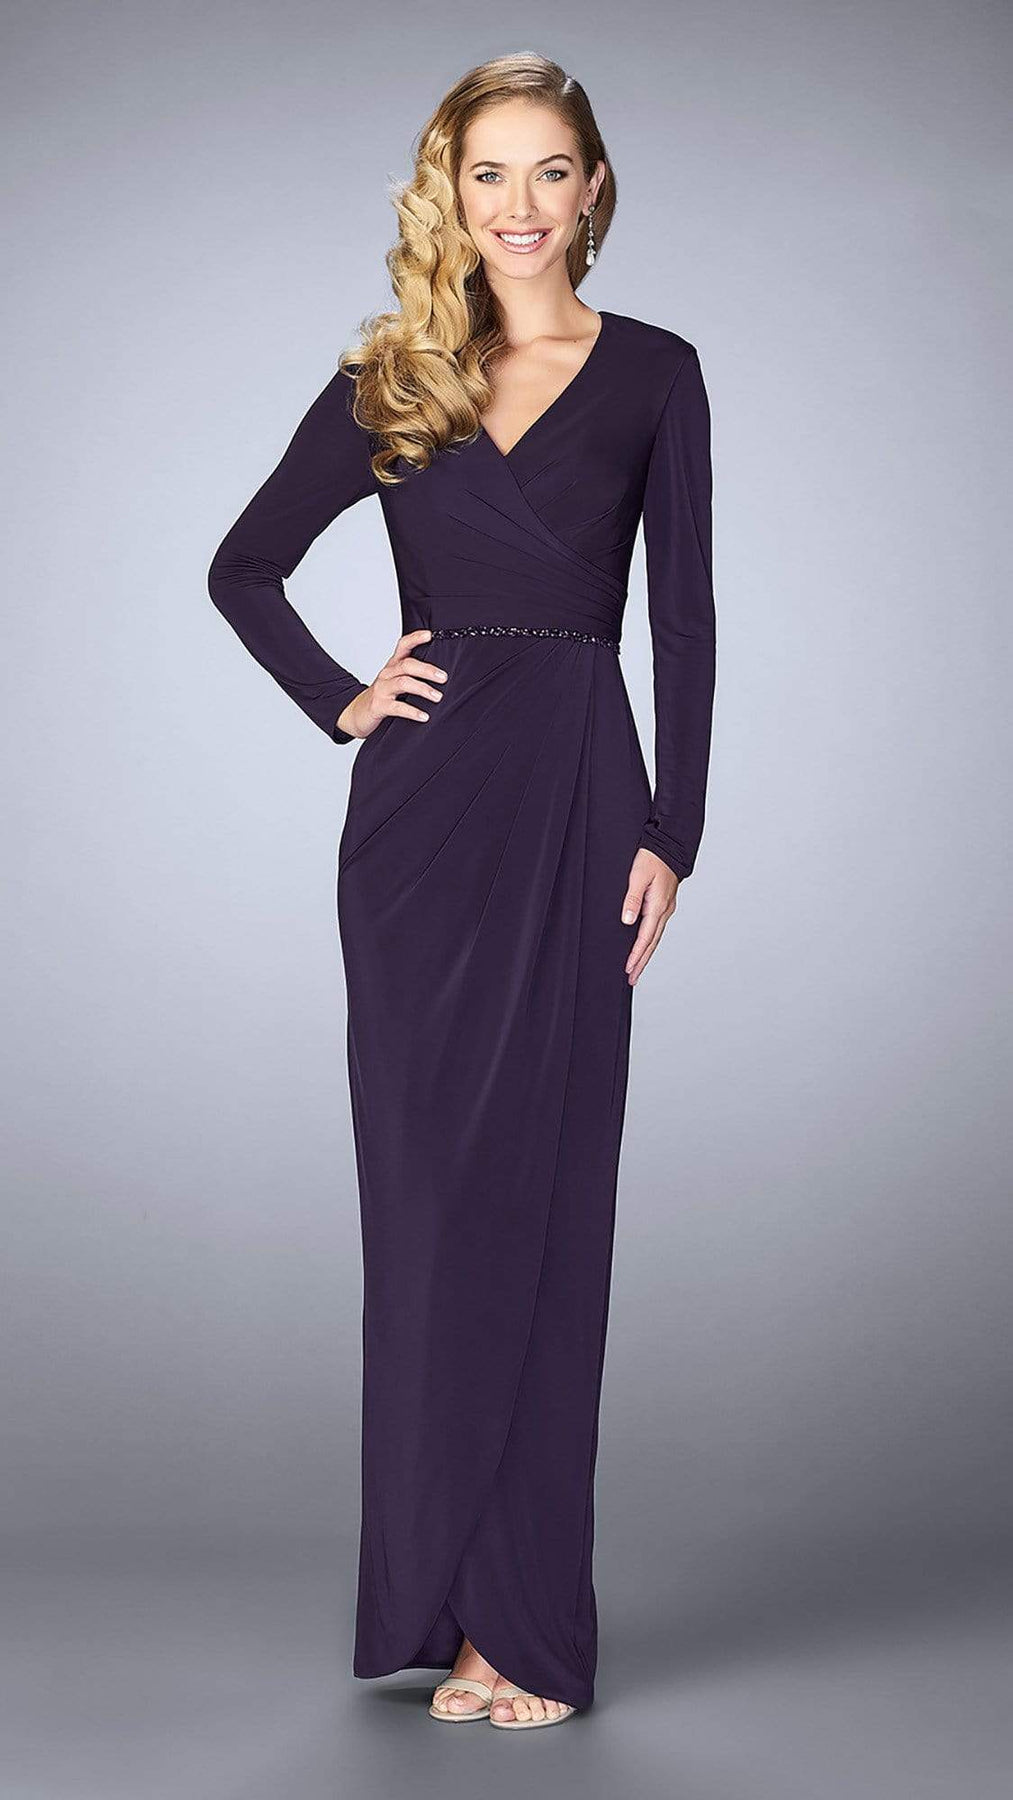 La Femme Long Sleeve Drape Tulip Gown 24927SC - 1 pc Plum in Size 4 Available CCSALE 4 / Plum